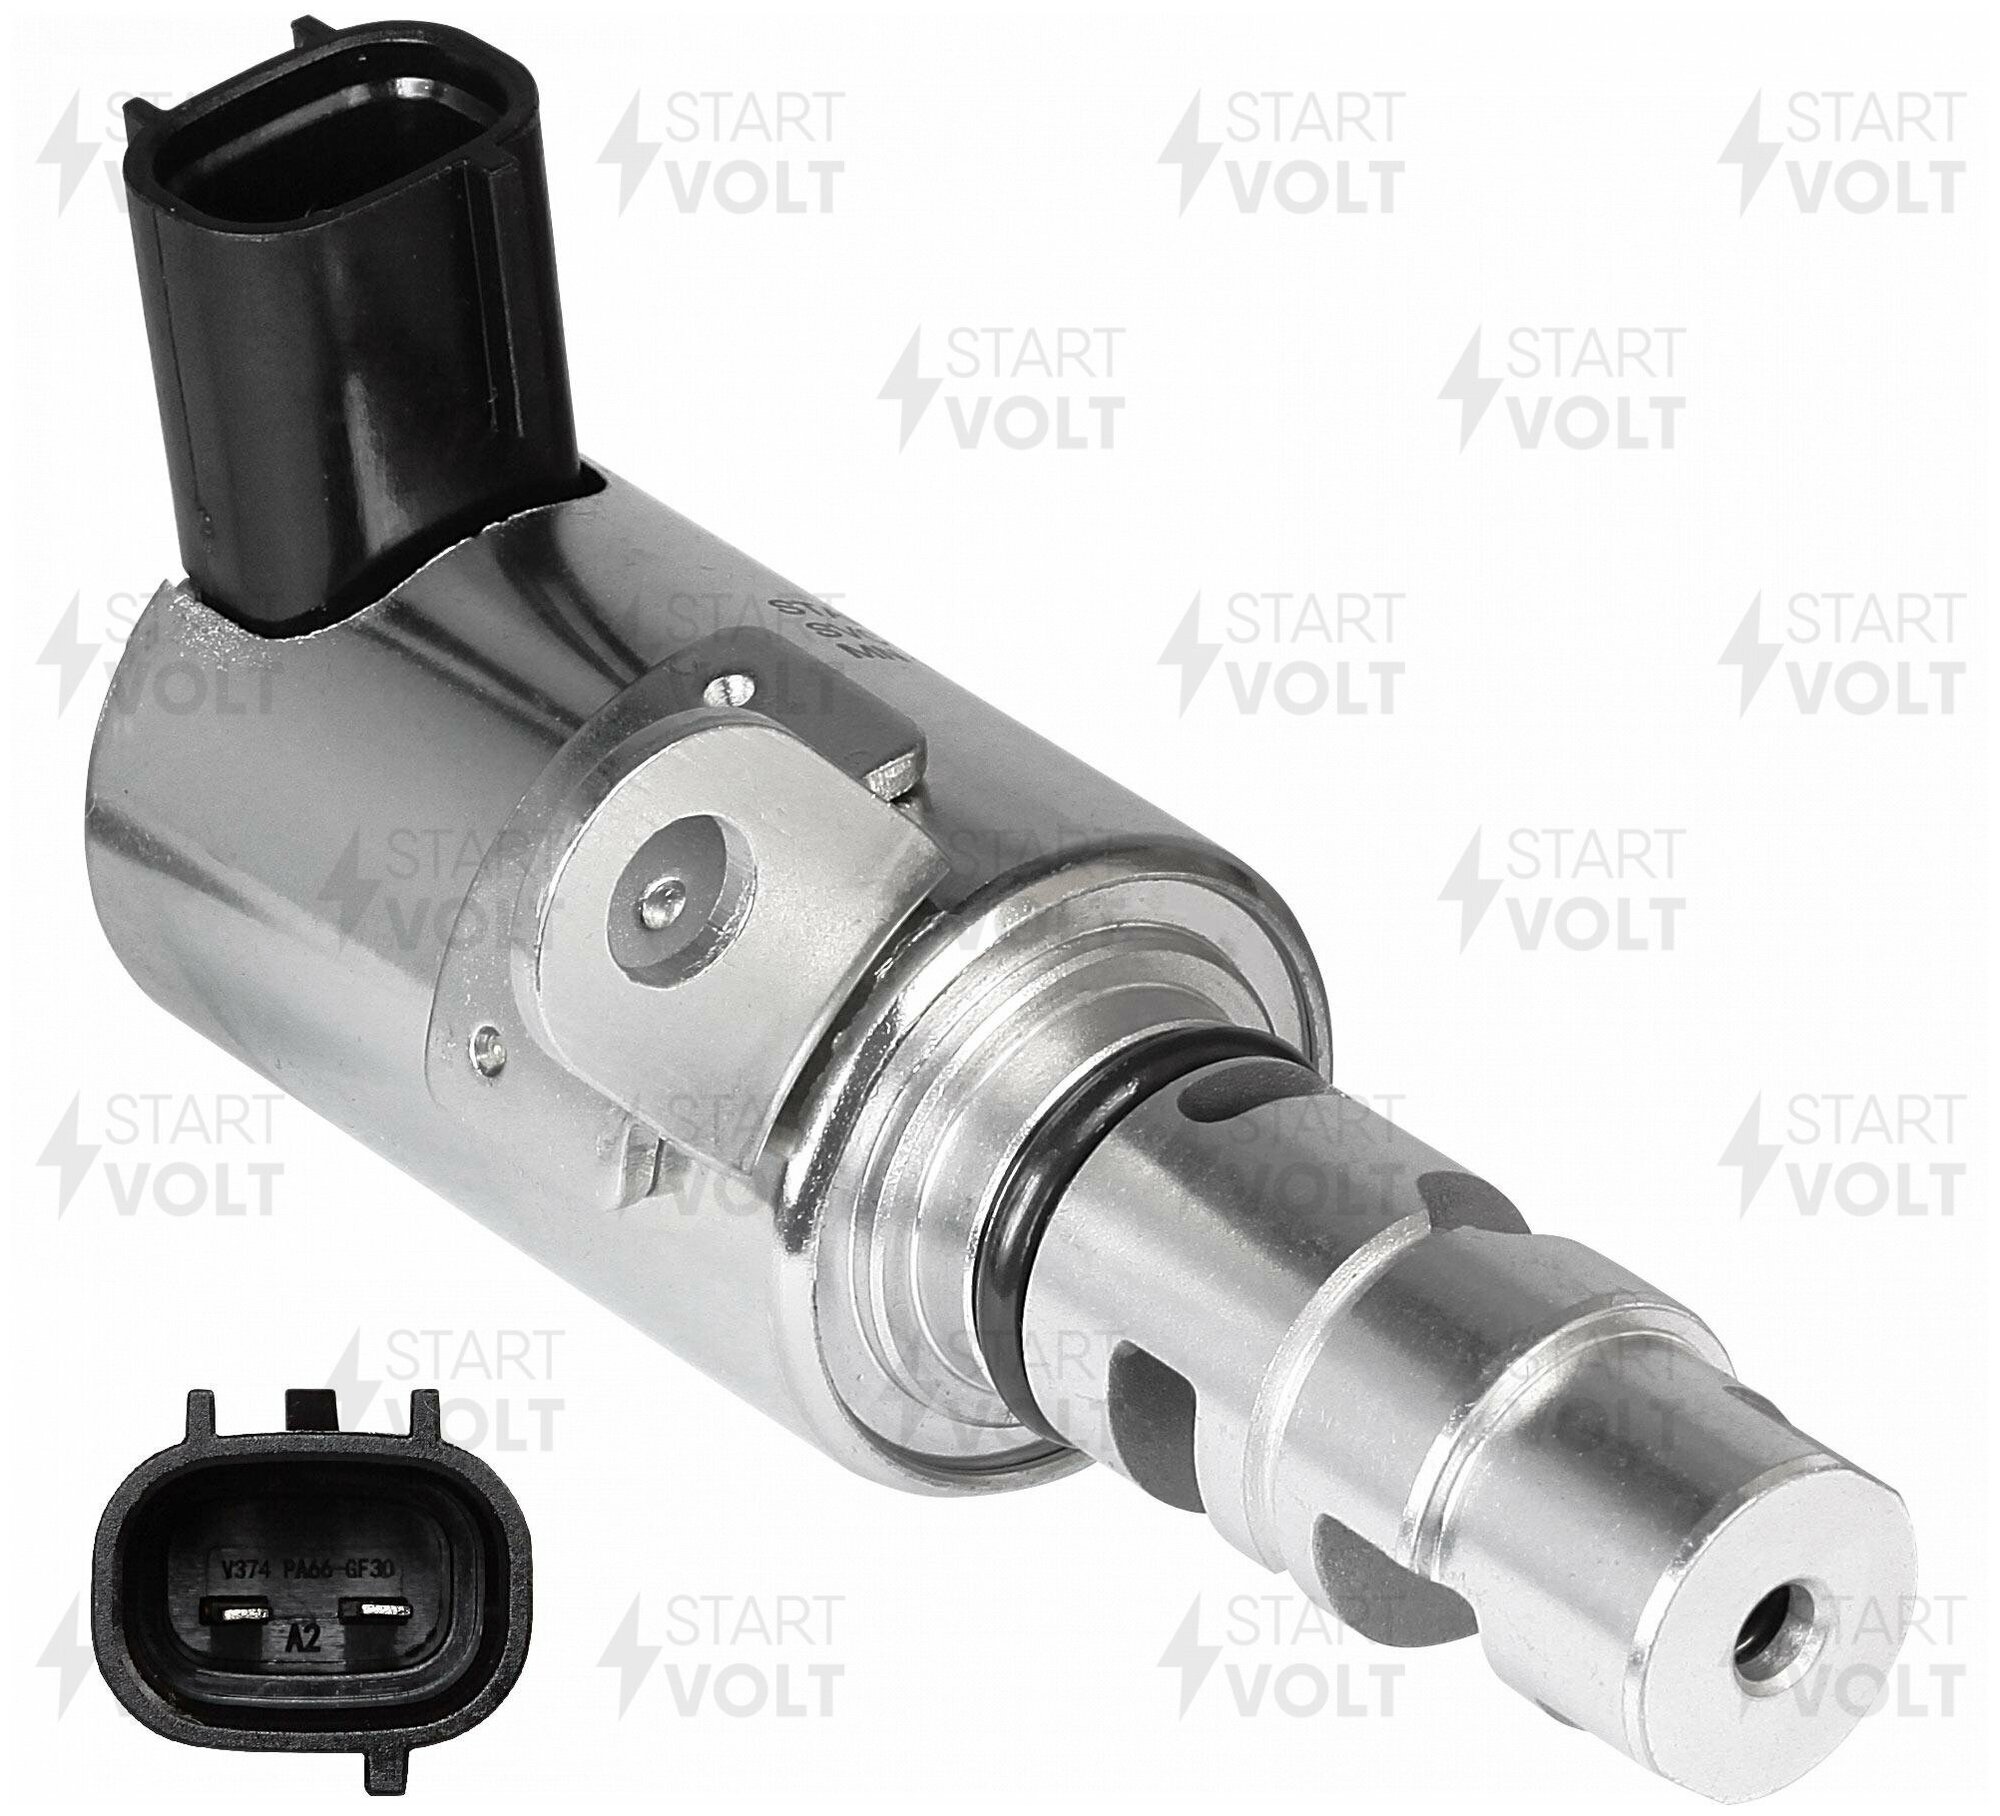 Клапан электромагнитный регулировки фаз ГРМ для автомобилей Mitsubishi Outlander (02-) 2.4i SVC 1106 StartVolt